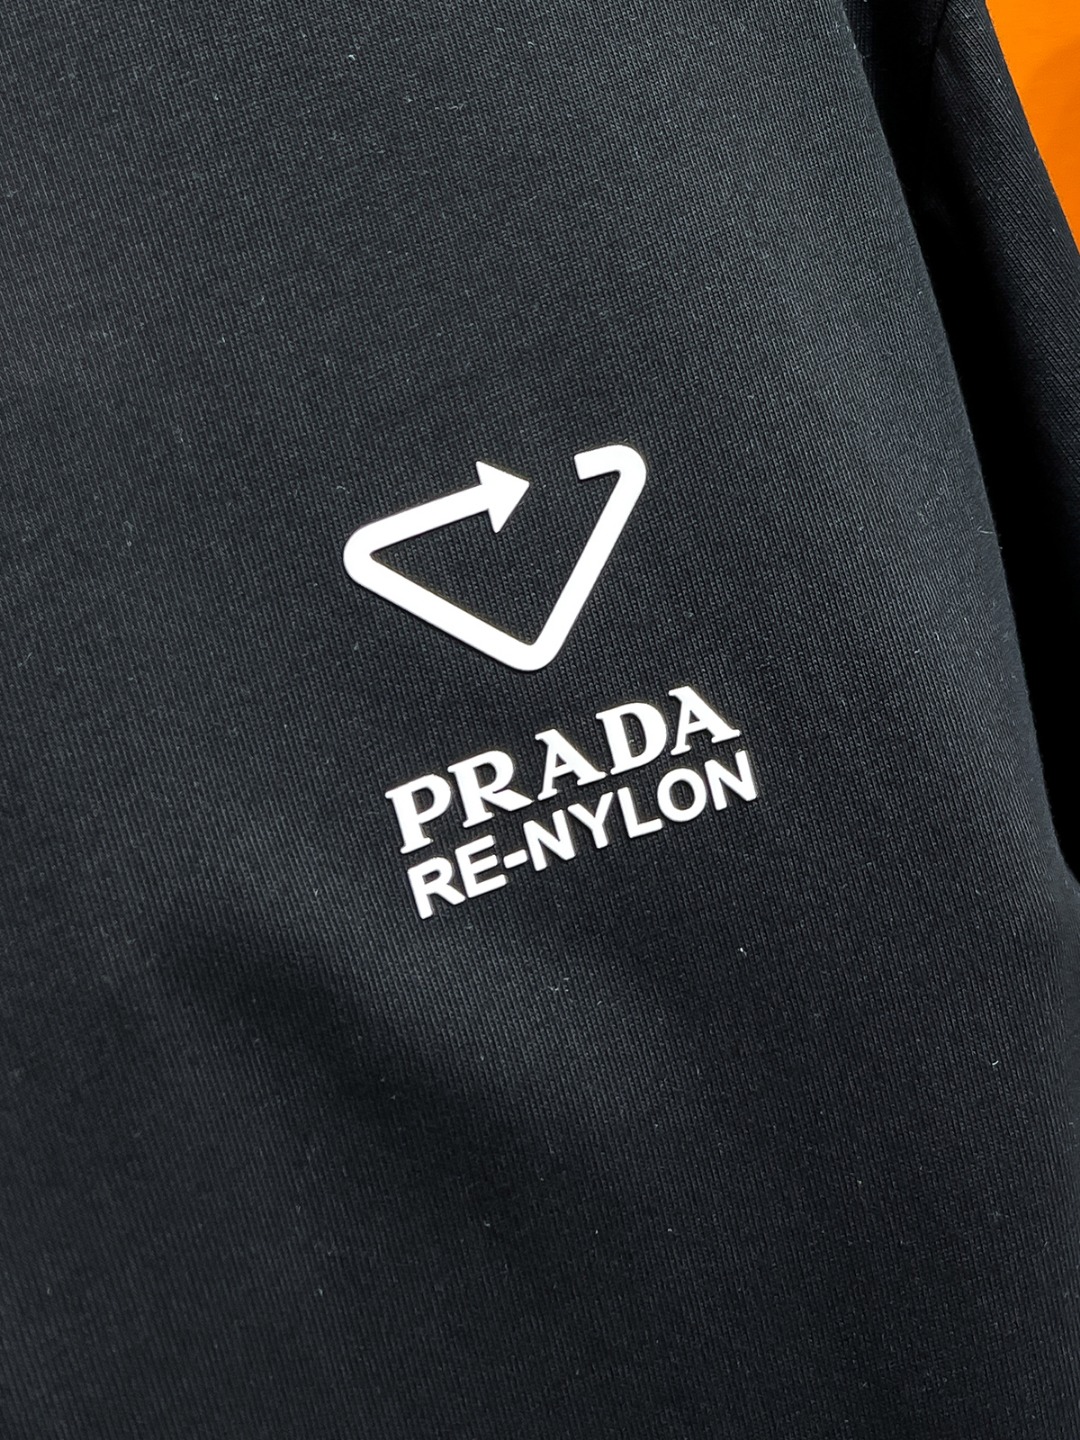 PRADA#24春夏顶级专柜同步短袖T恤3标齐全采用客供进口100%-32支双股新疆棉面料制成专柜原版面